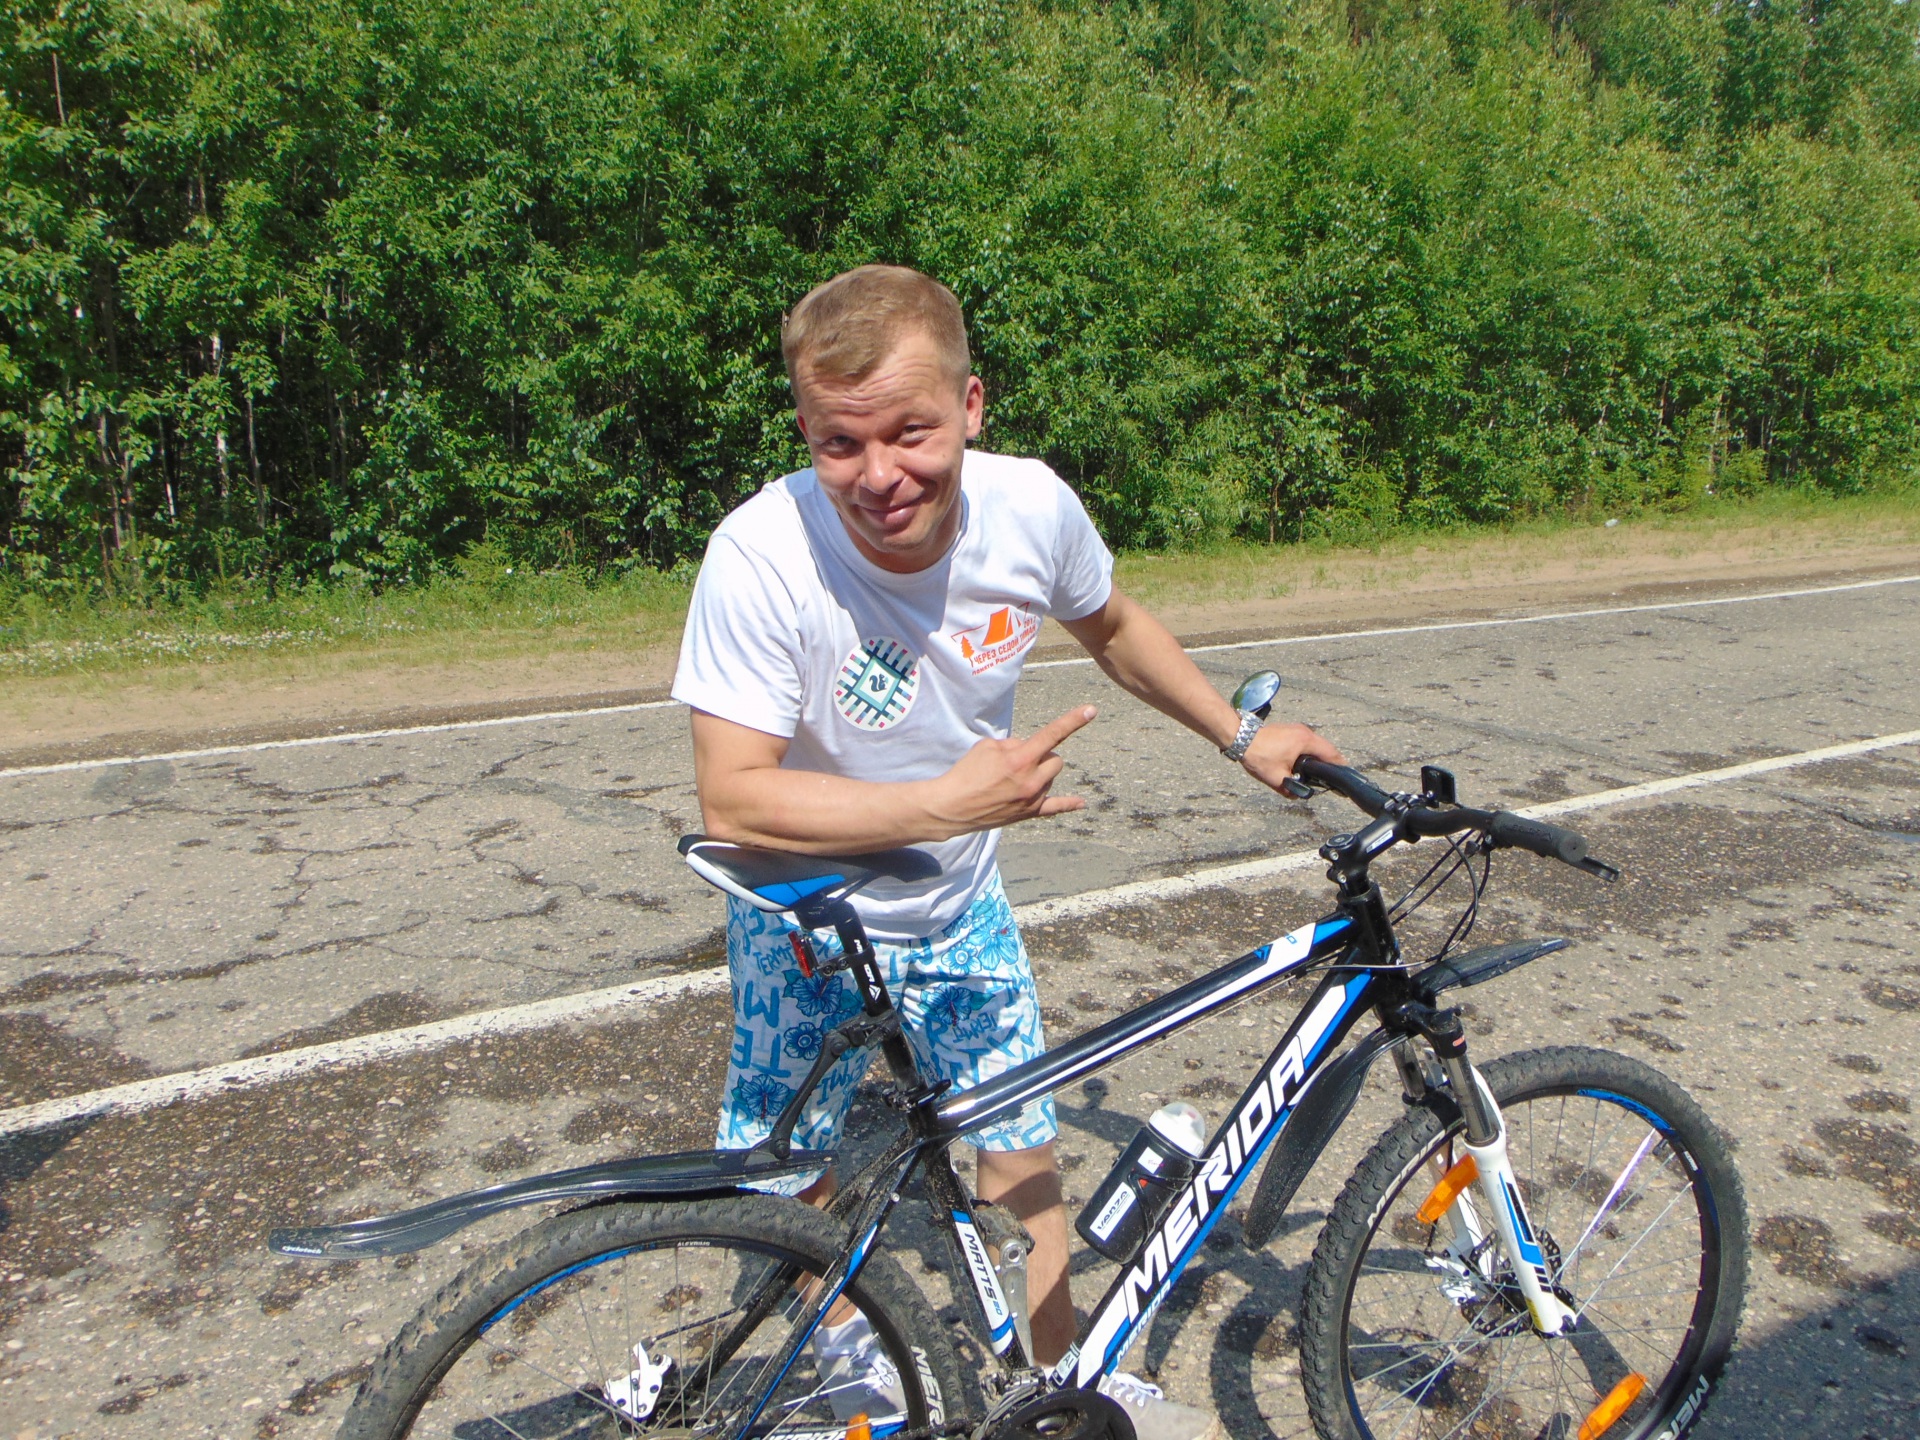 Натомість від керівника муніципалітету Дмитро Шатохін взяв обіцянку взяти участь в наступному велопробігу в 2018 році